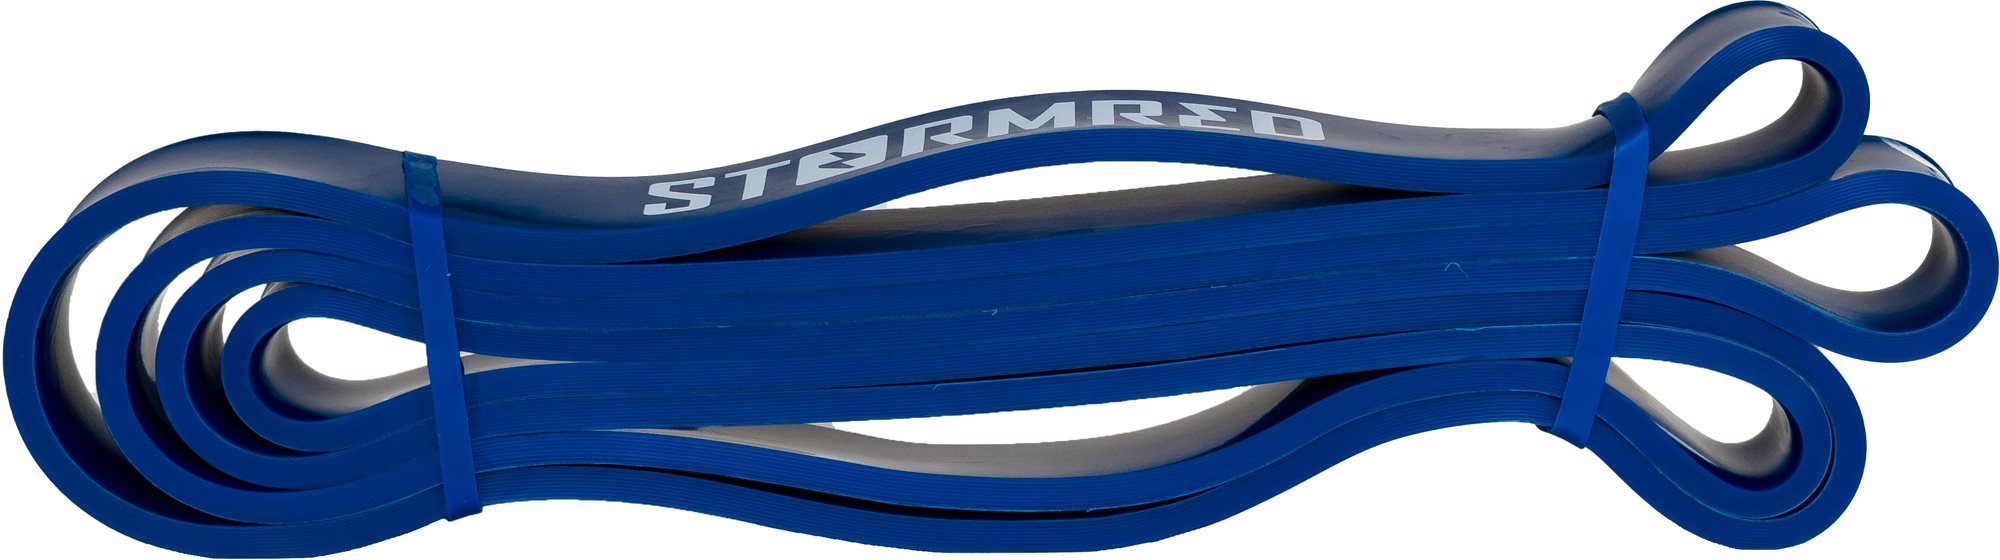 Erősítő gumiszalag Stormred Ellenállásos gumiszalag - kék